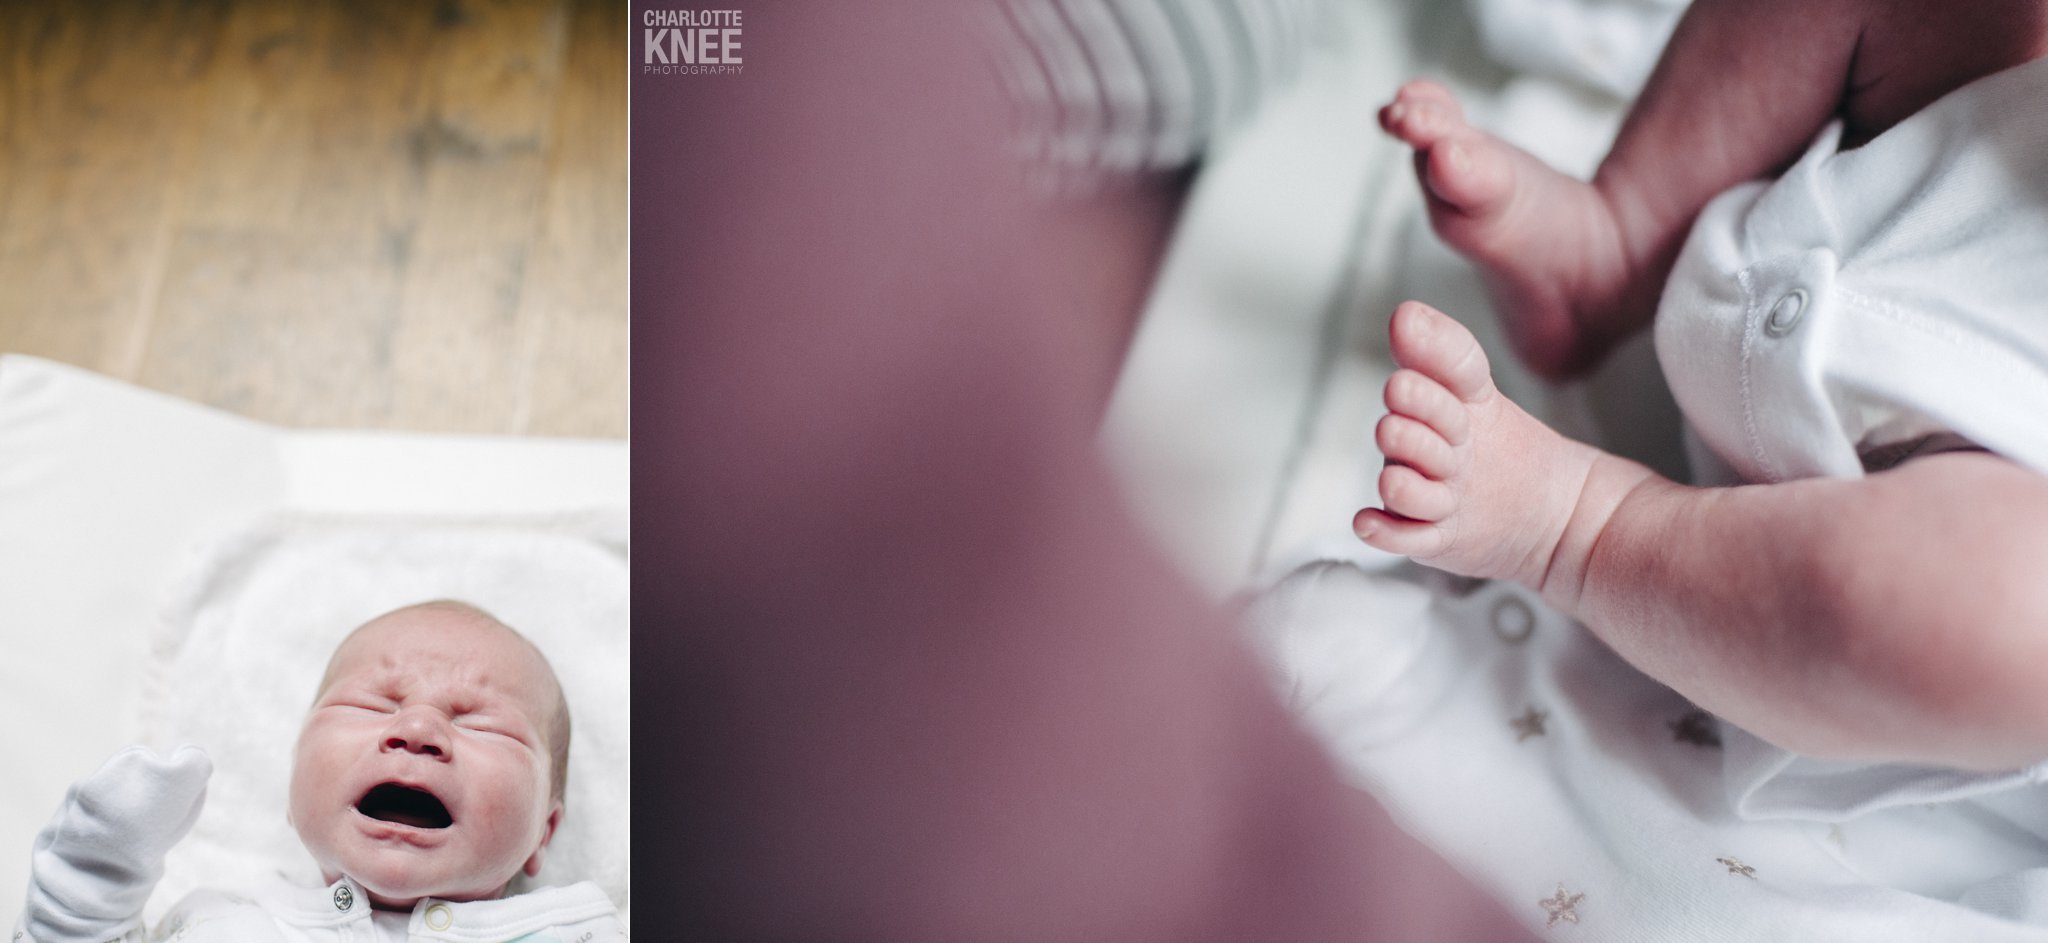 Newborn-Photography-Baby-Jamie-Charlotte-Knee-Photography_0004.jpg